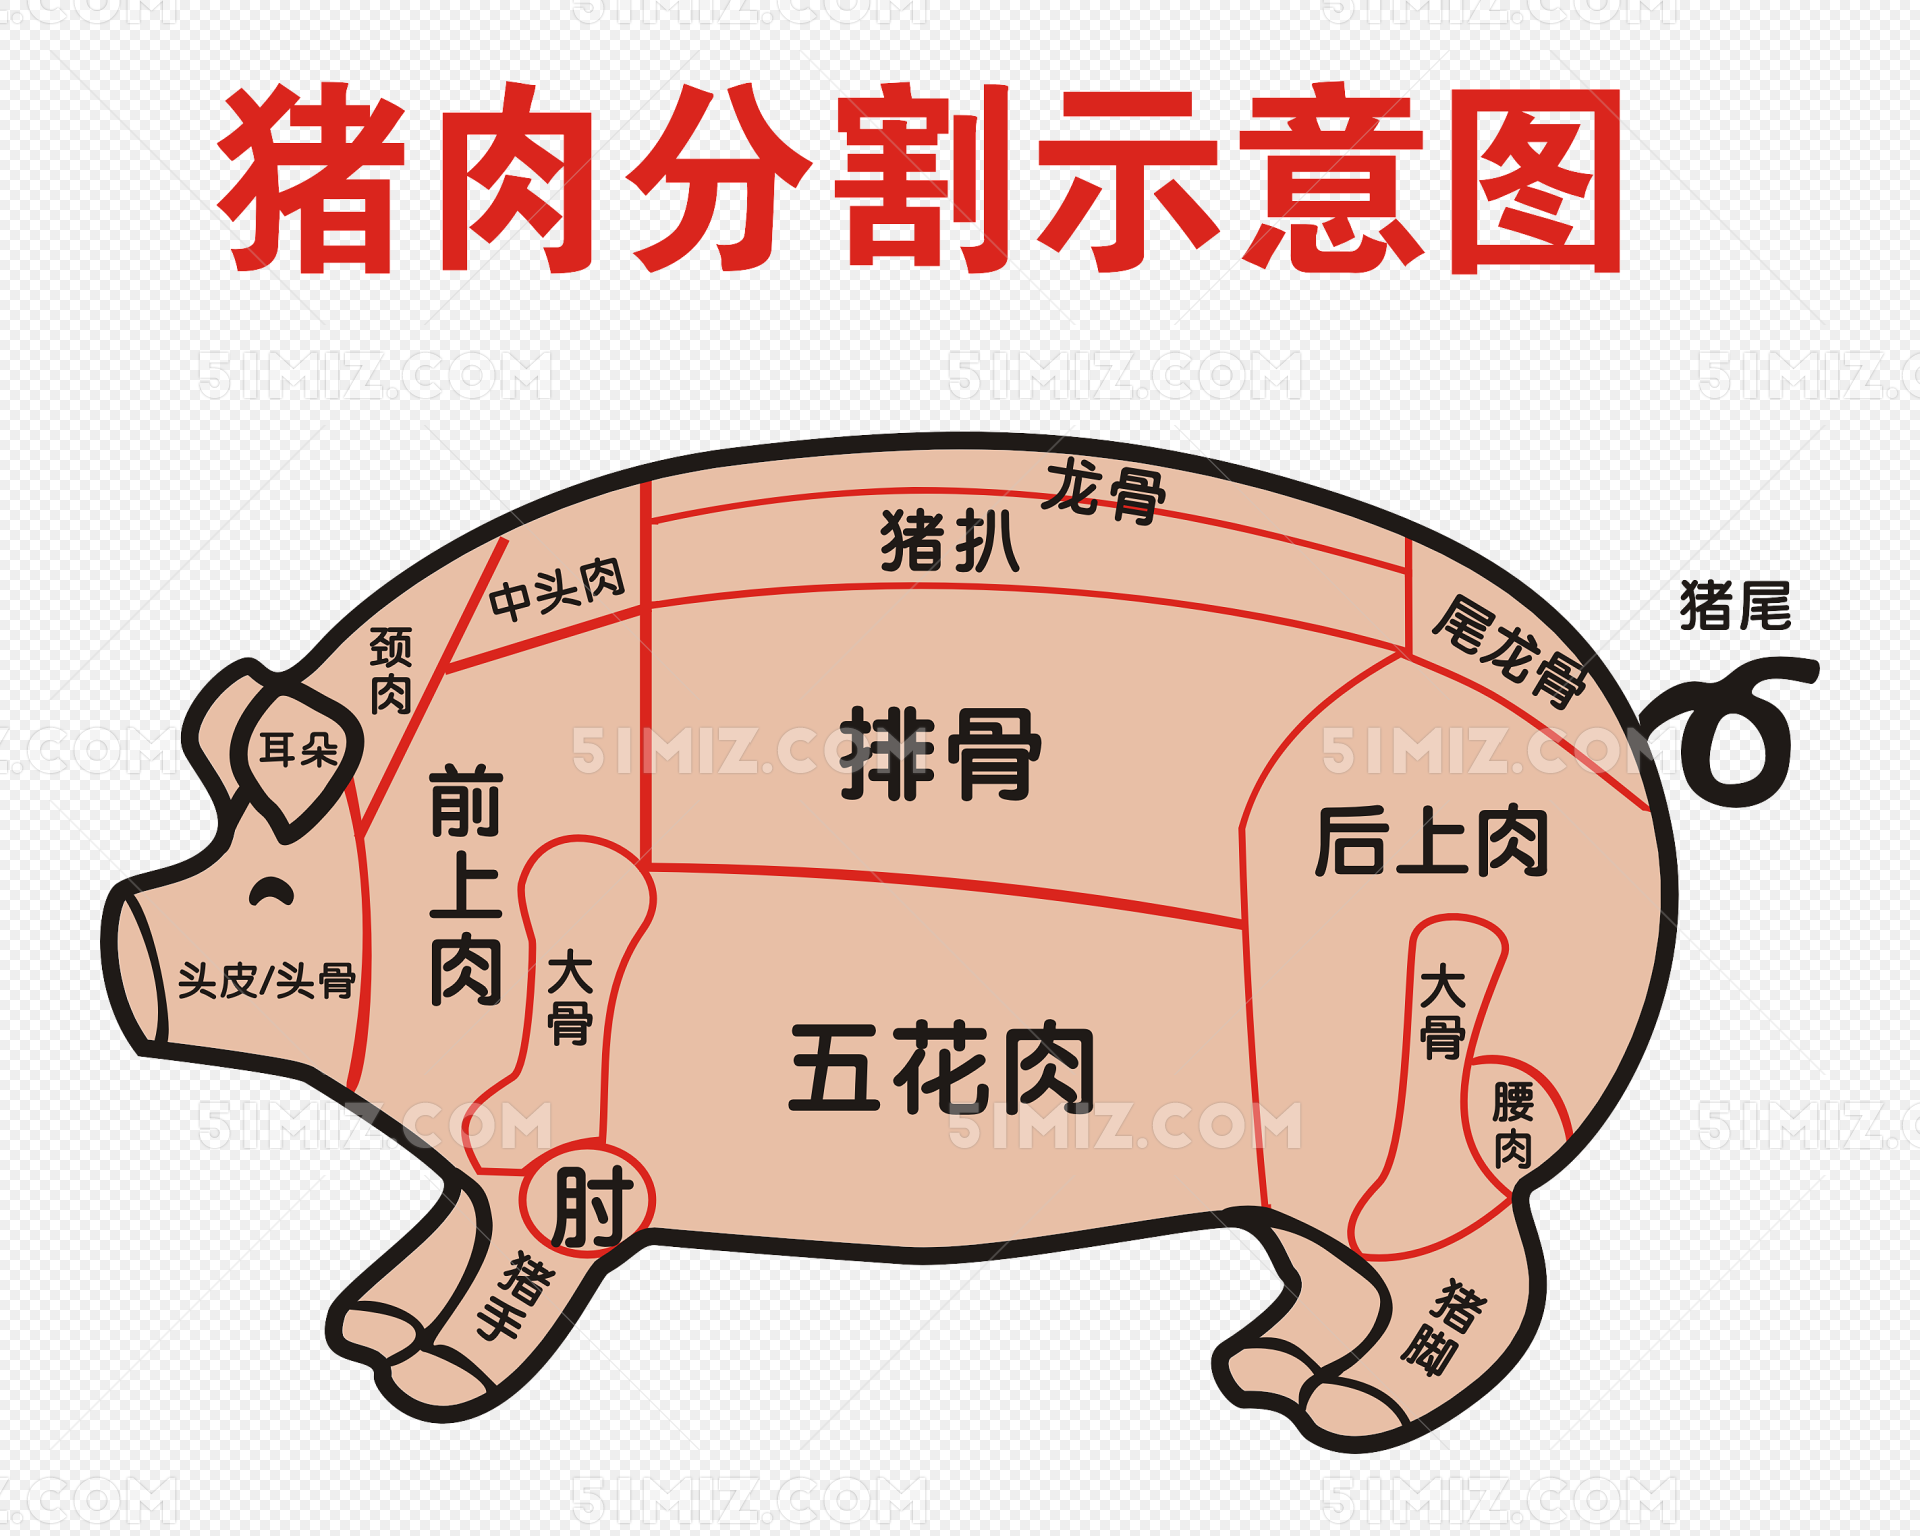 生猪 结构 图 - 猪综合讨论区 鸡病专业网论坛